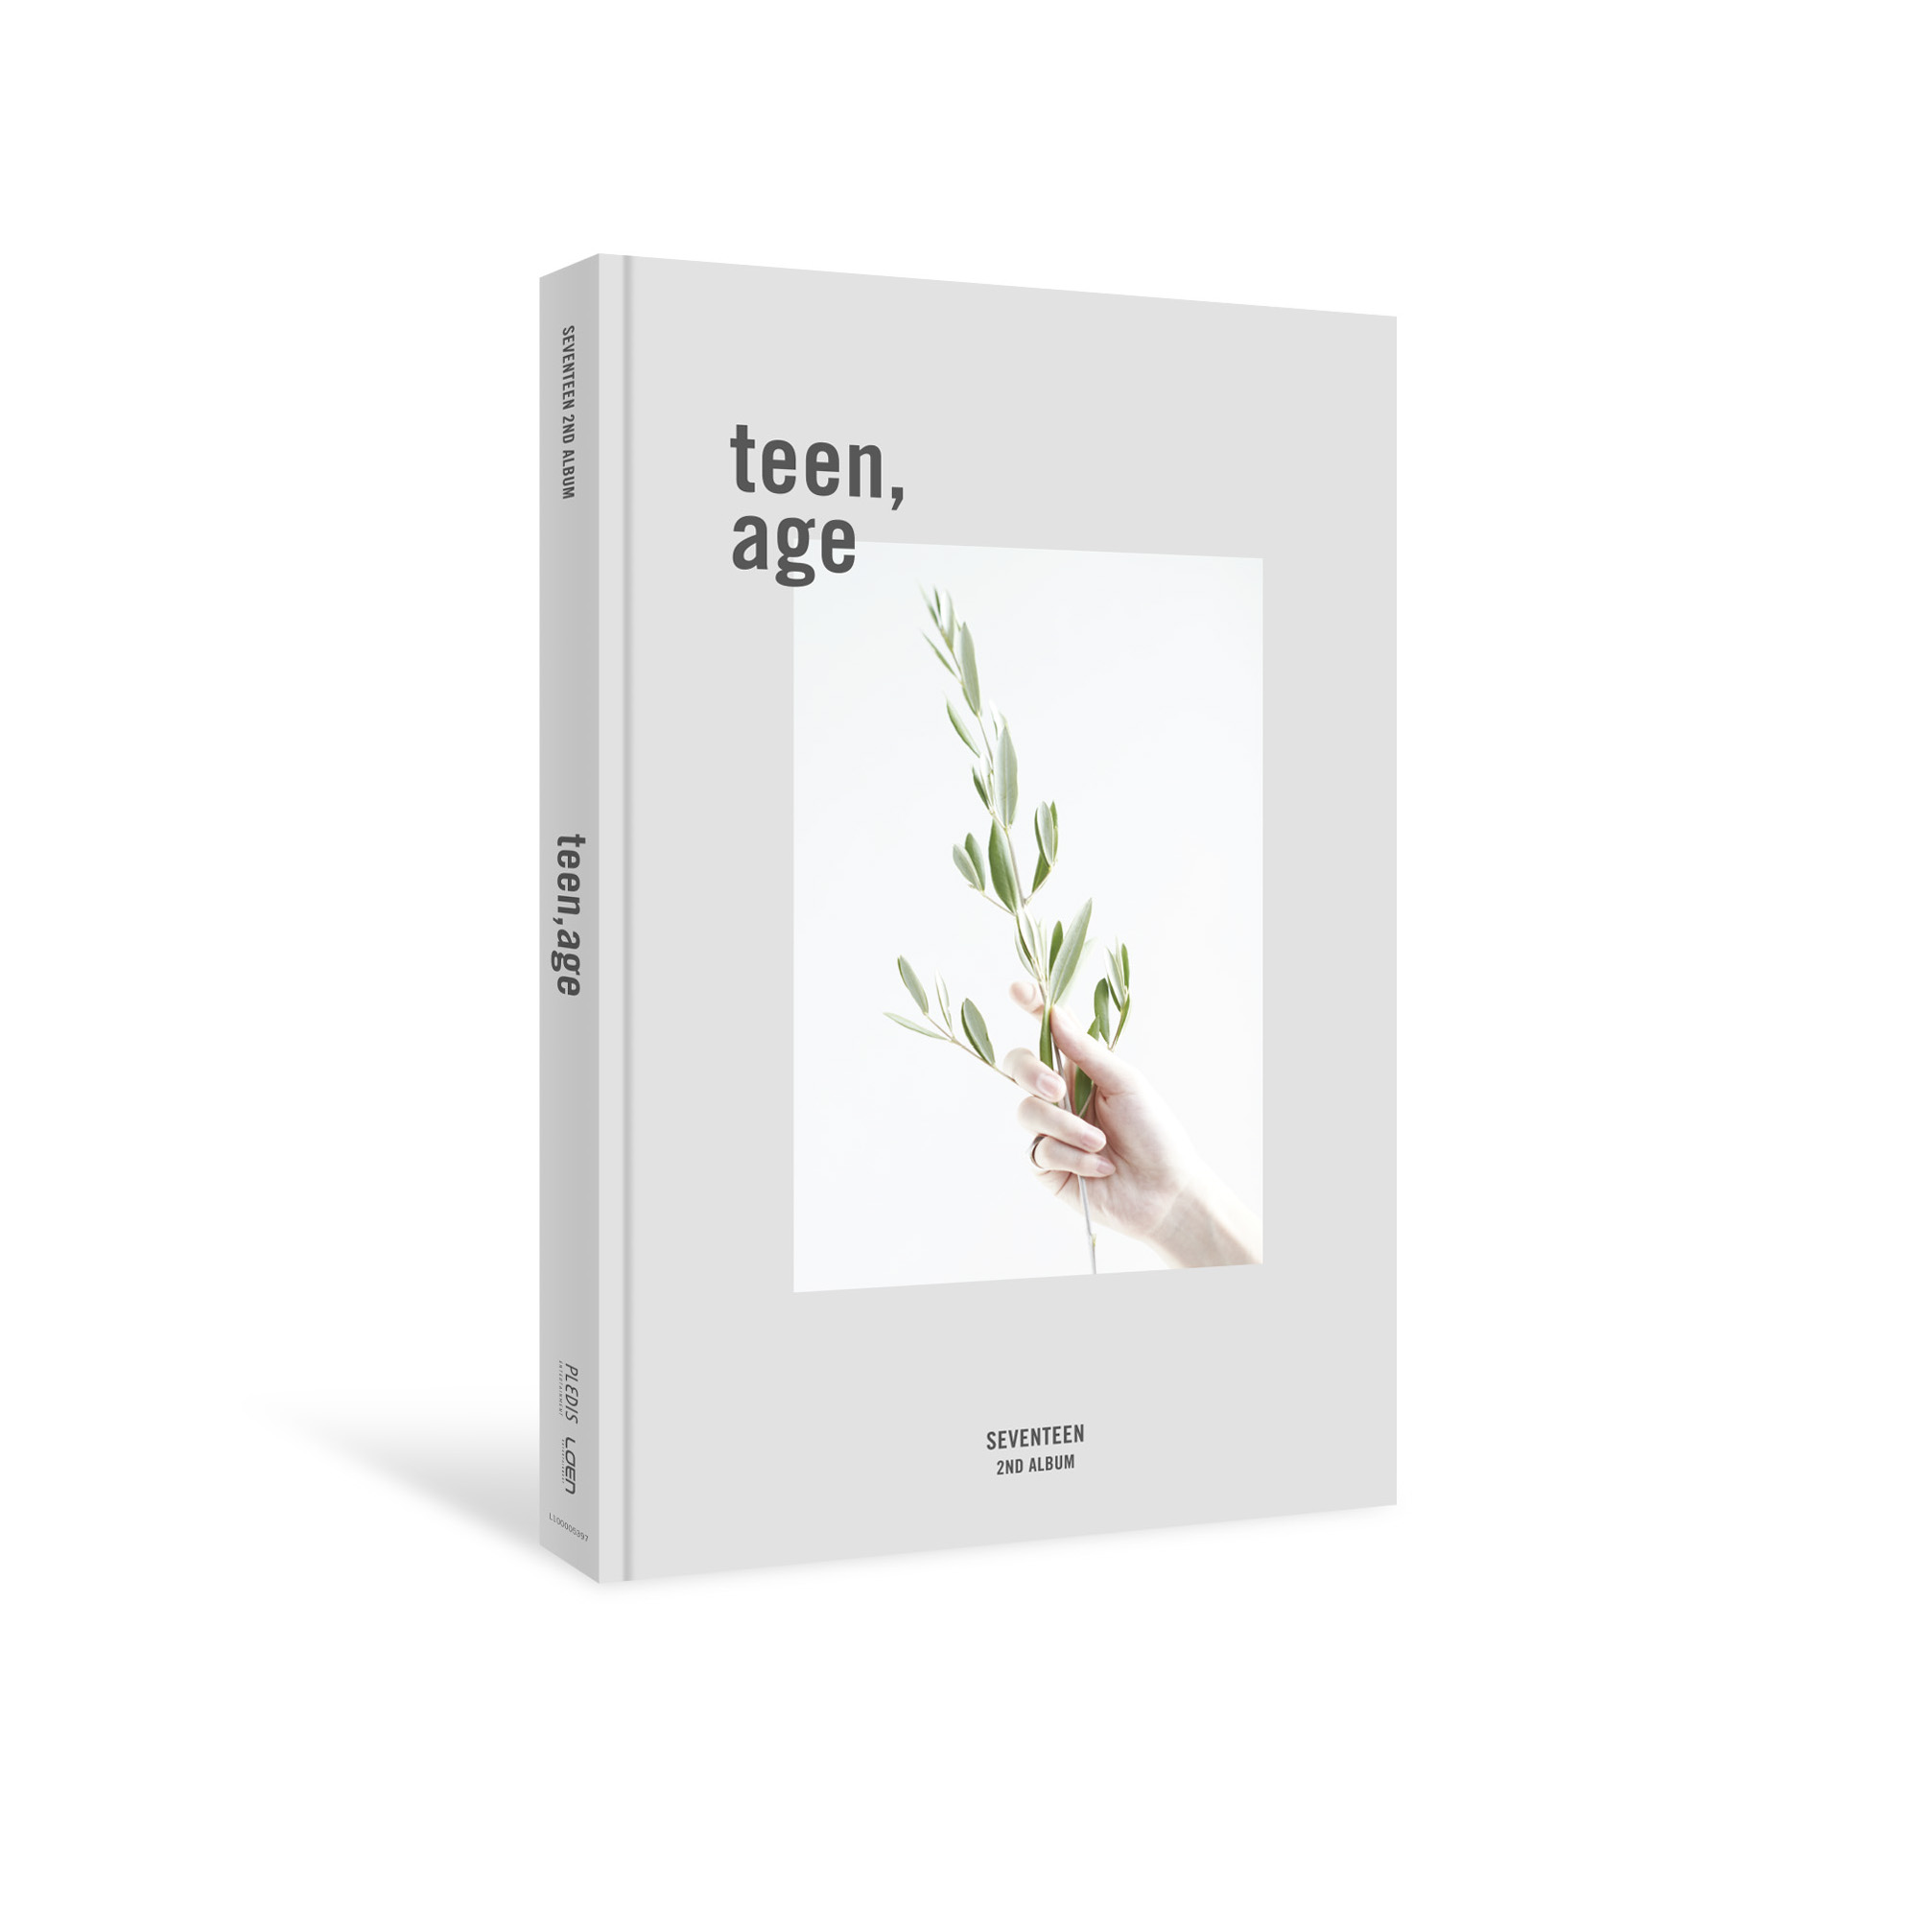 SEVENTEEN - 2nd Album [TEEN, AGE]